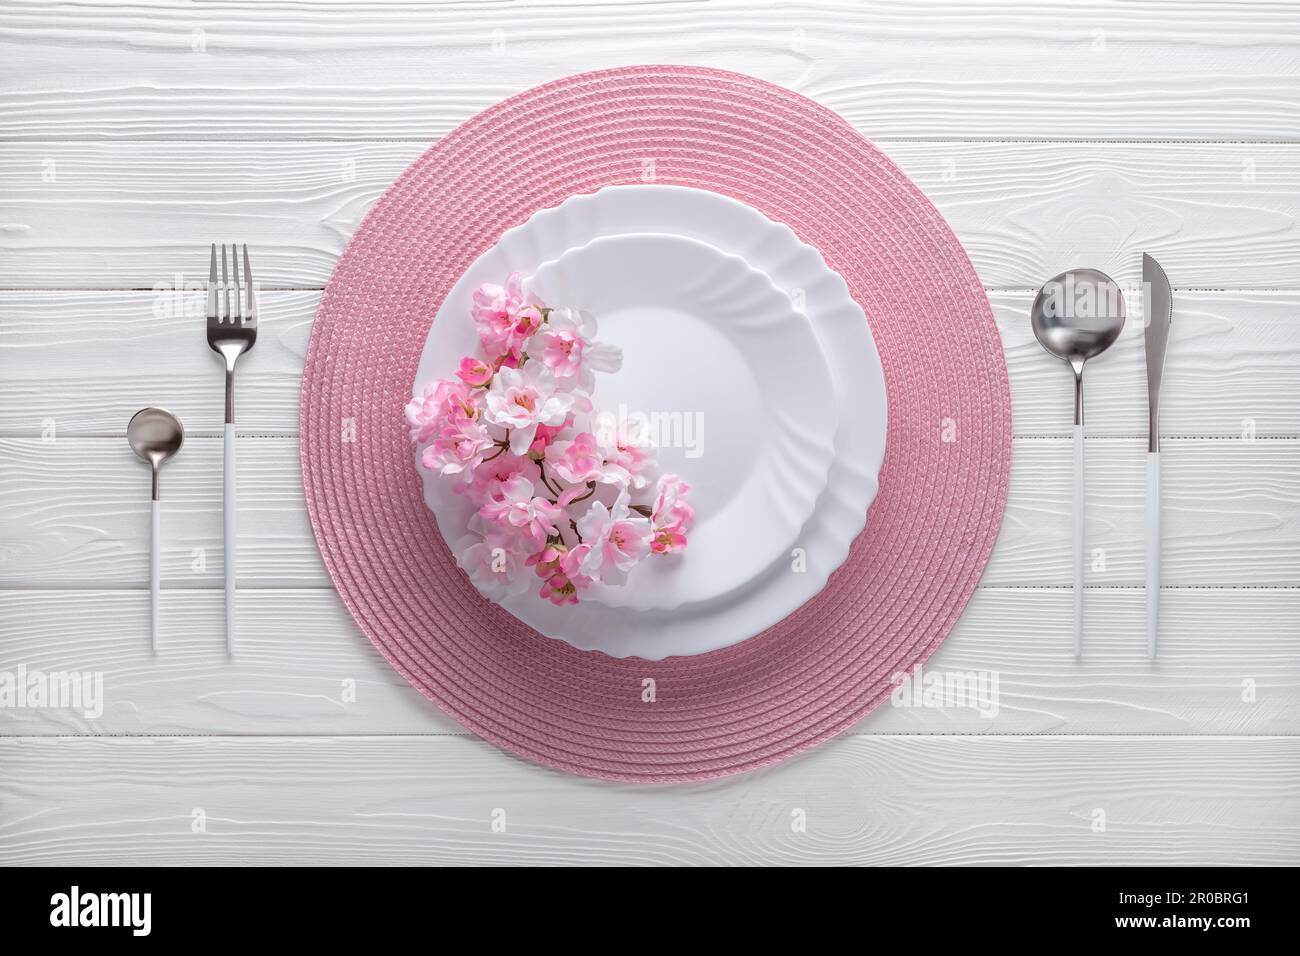 Festlicher Ort mit pinkfarbener Serviette und Frühlingsblumen. Leere Teller und silbernes Besteck auf weißem Holztisch. Draufsicht. Festliches Abendessen im luxuriösen Stockfoto